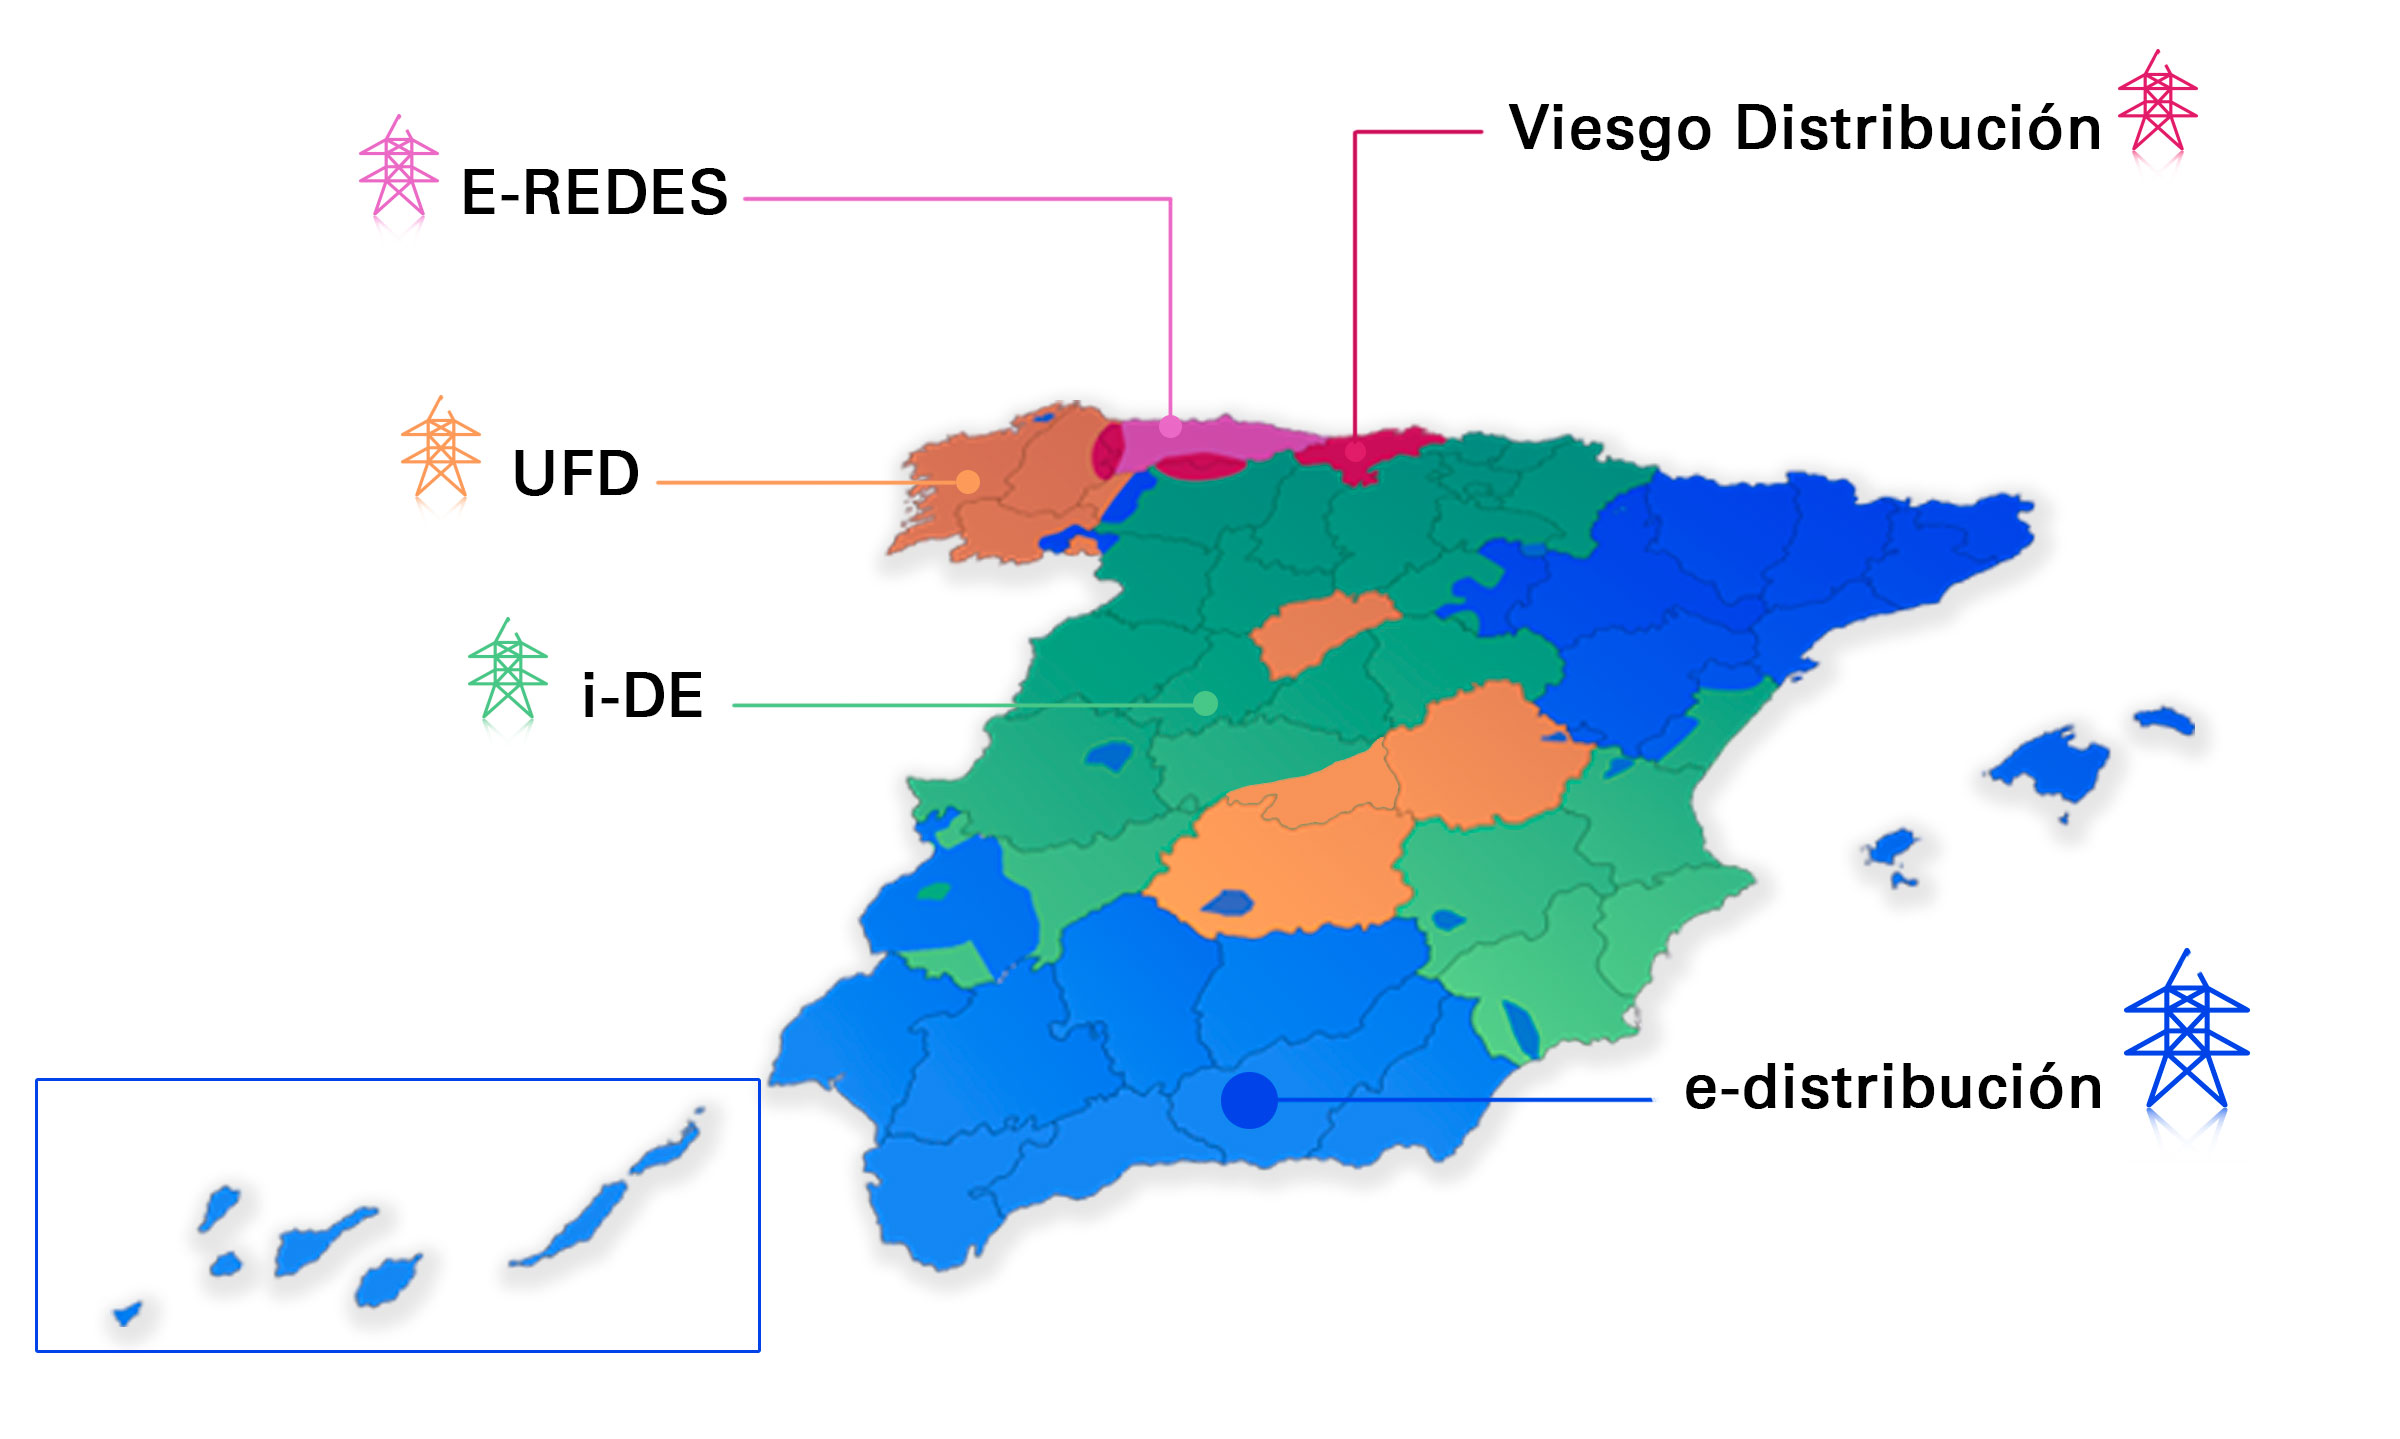 Mapa de España con zonas por distribuidora eléctrica. Esta información se presenta a continuación en texto.